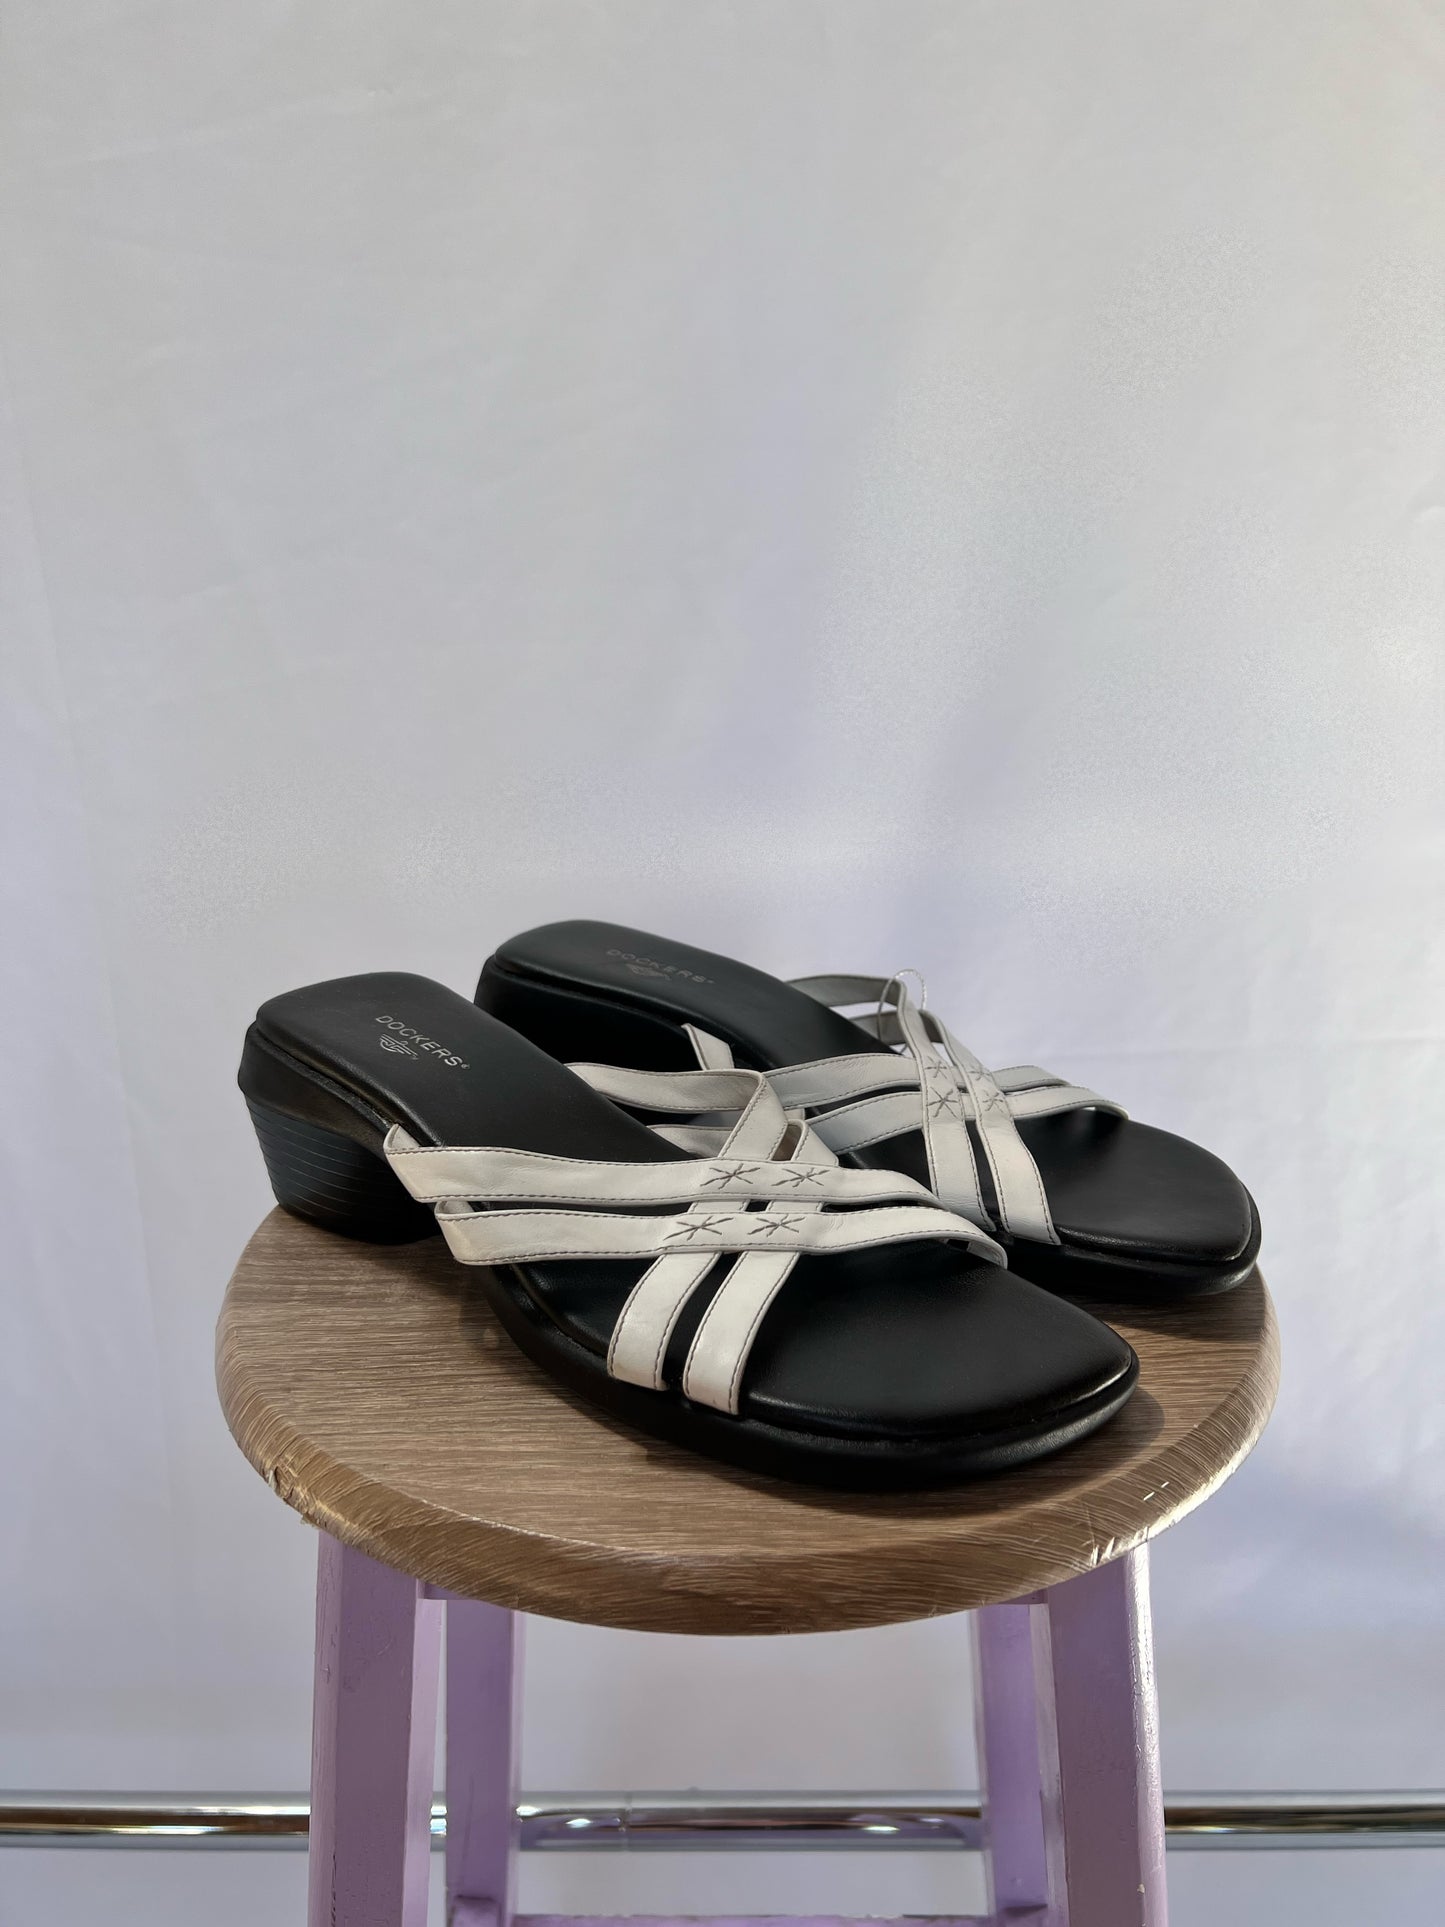 Dockers Heeled Sandals - 7.5/8